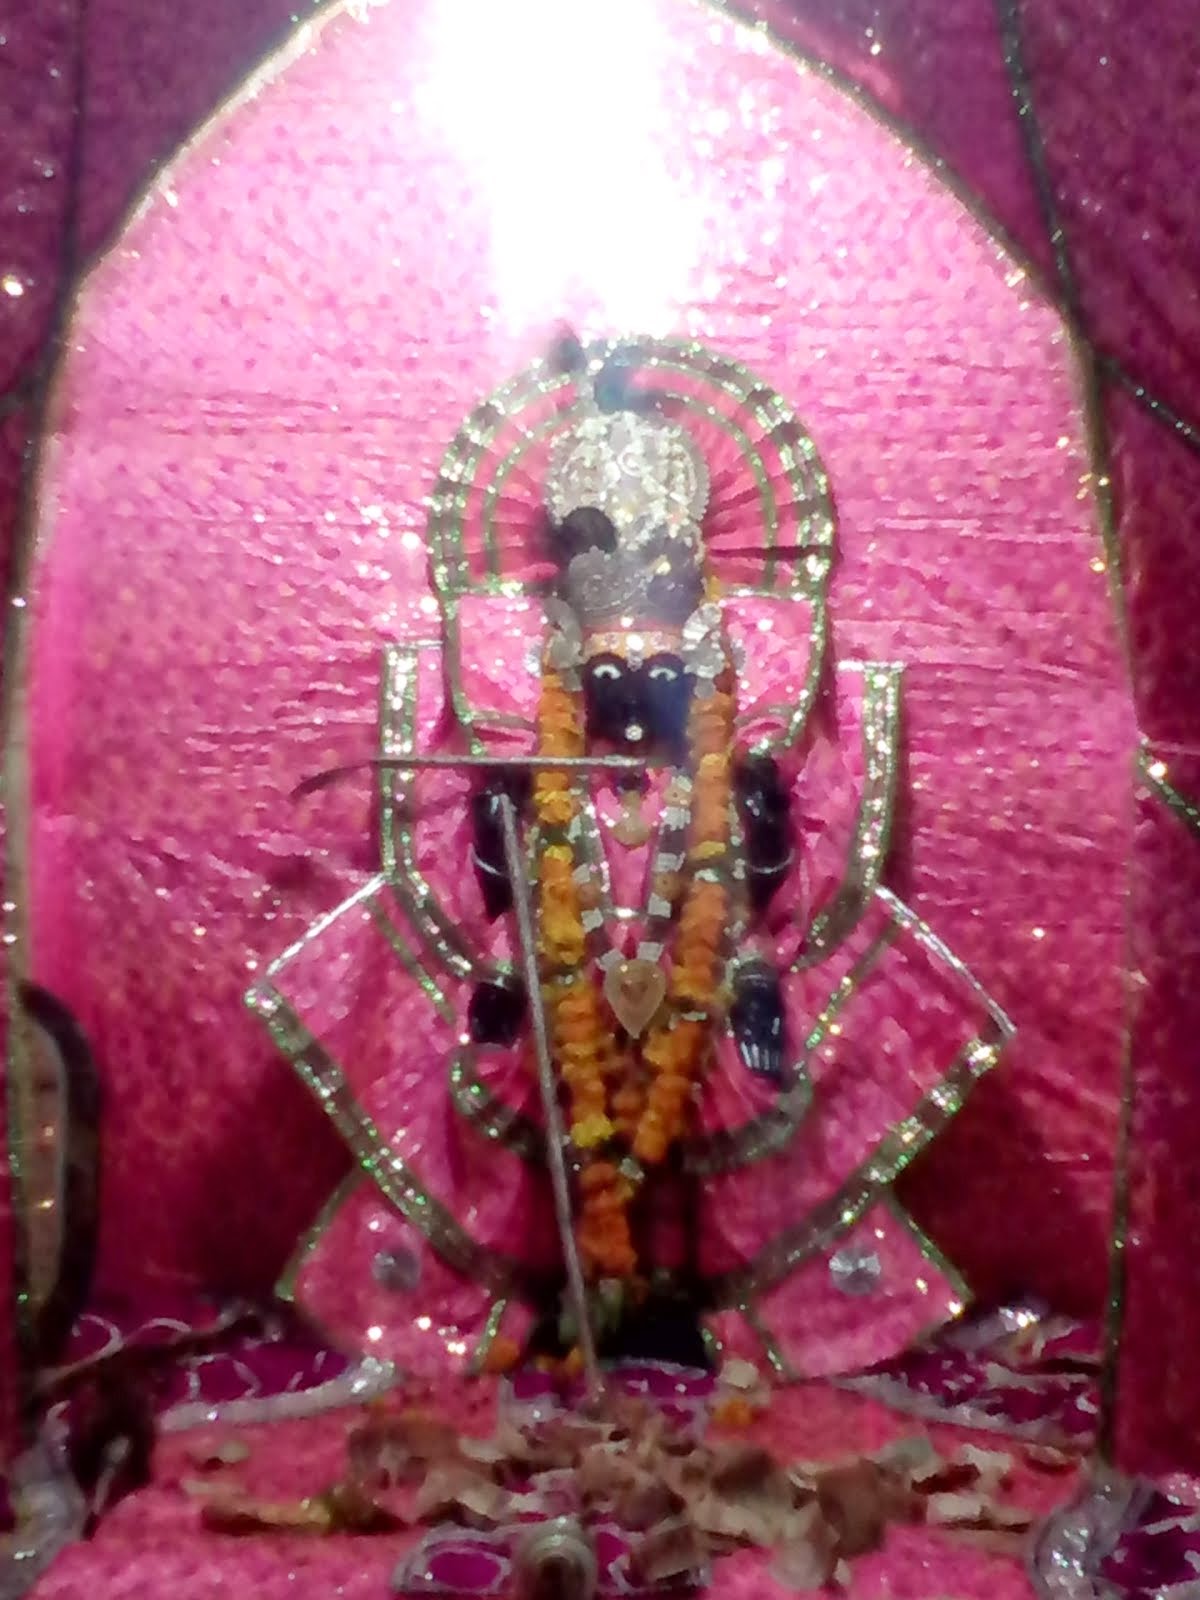 charbhuja mandir chhata